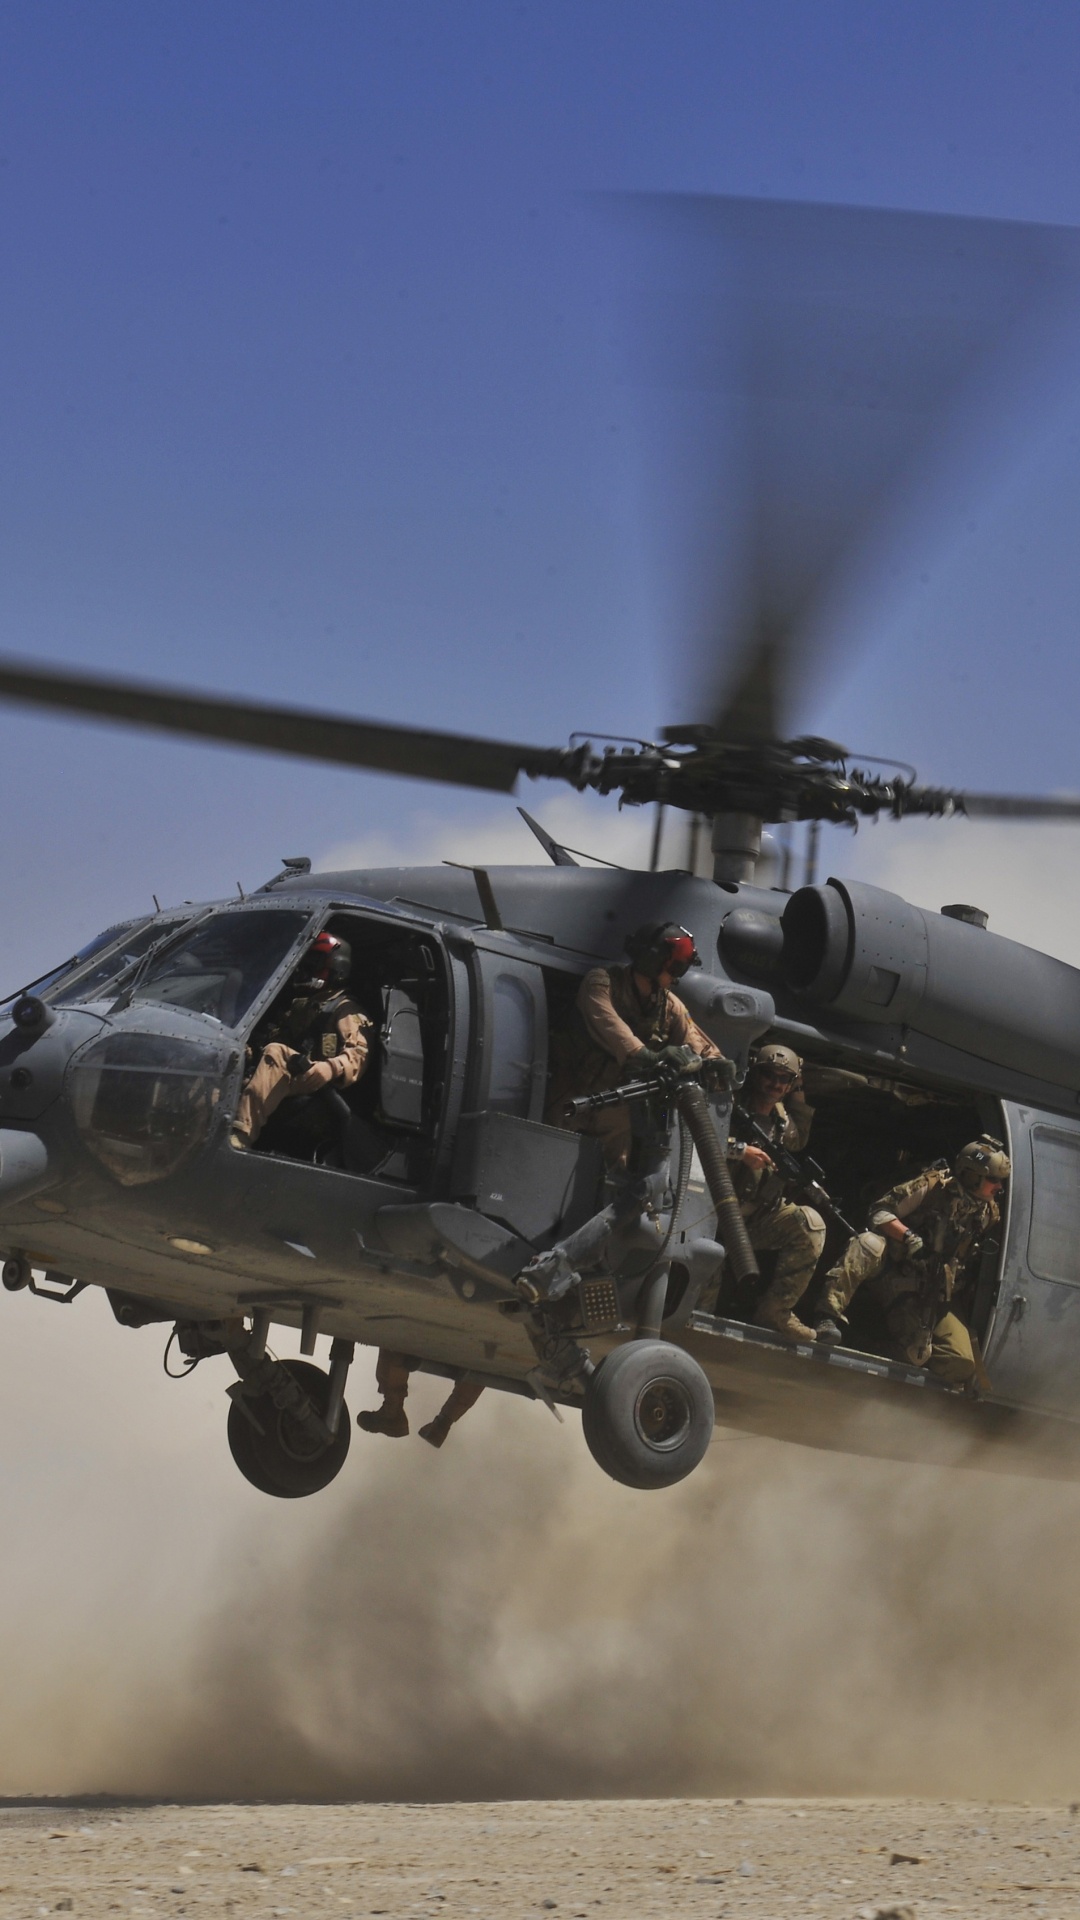 直升机, 军用直升机, 用直升机, 直升机转子的, 旋翼飞机 壁纸 1080x1920 允许